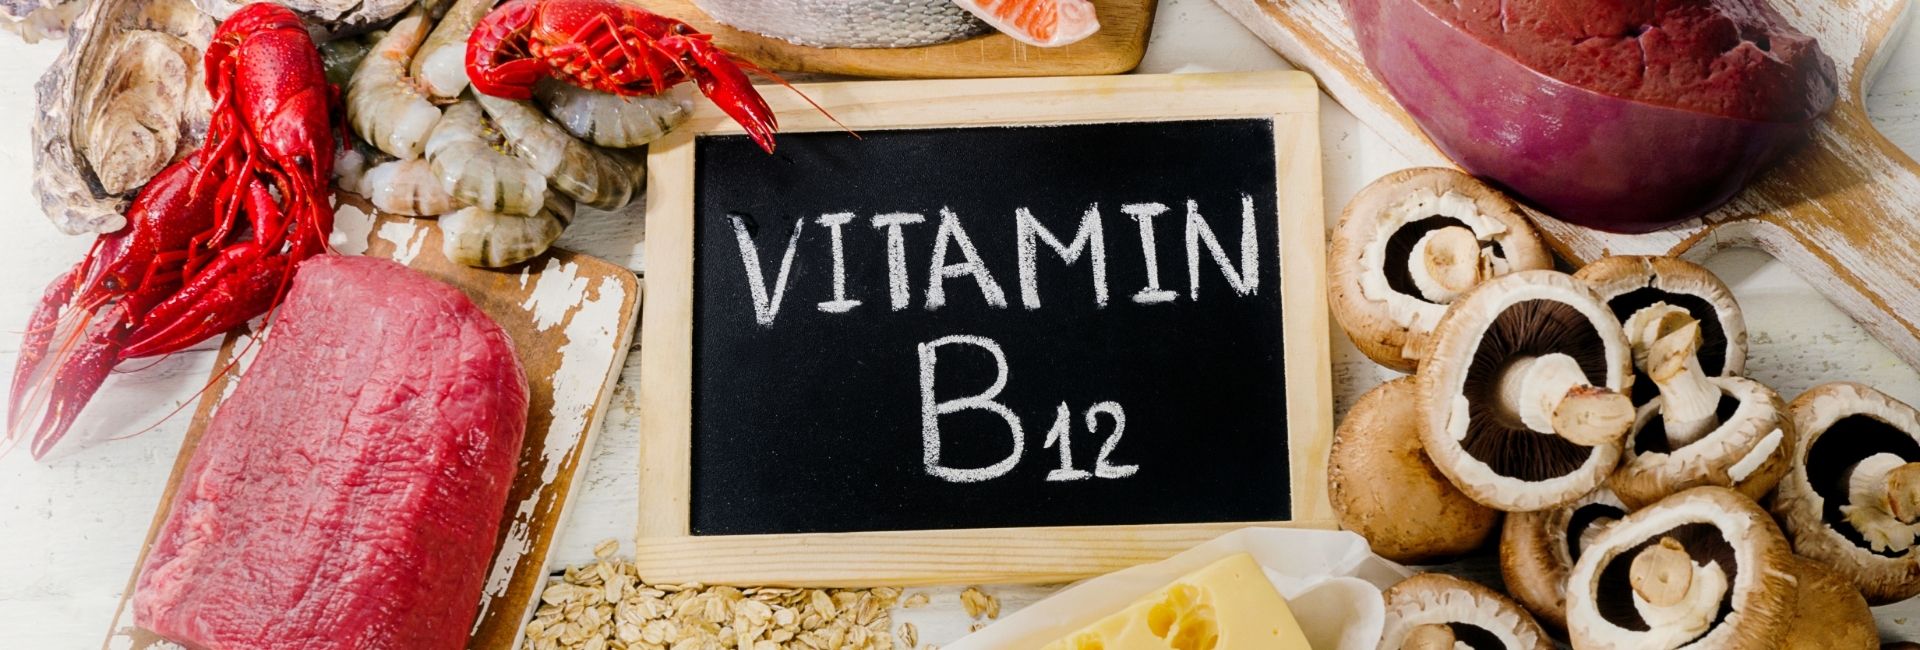 B12 Vitamini Eksikliğinin Belirtileri Nelerdir?